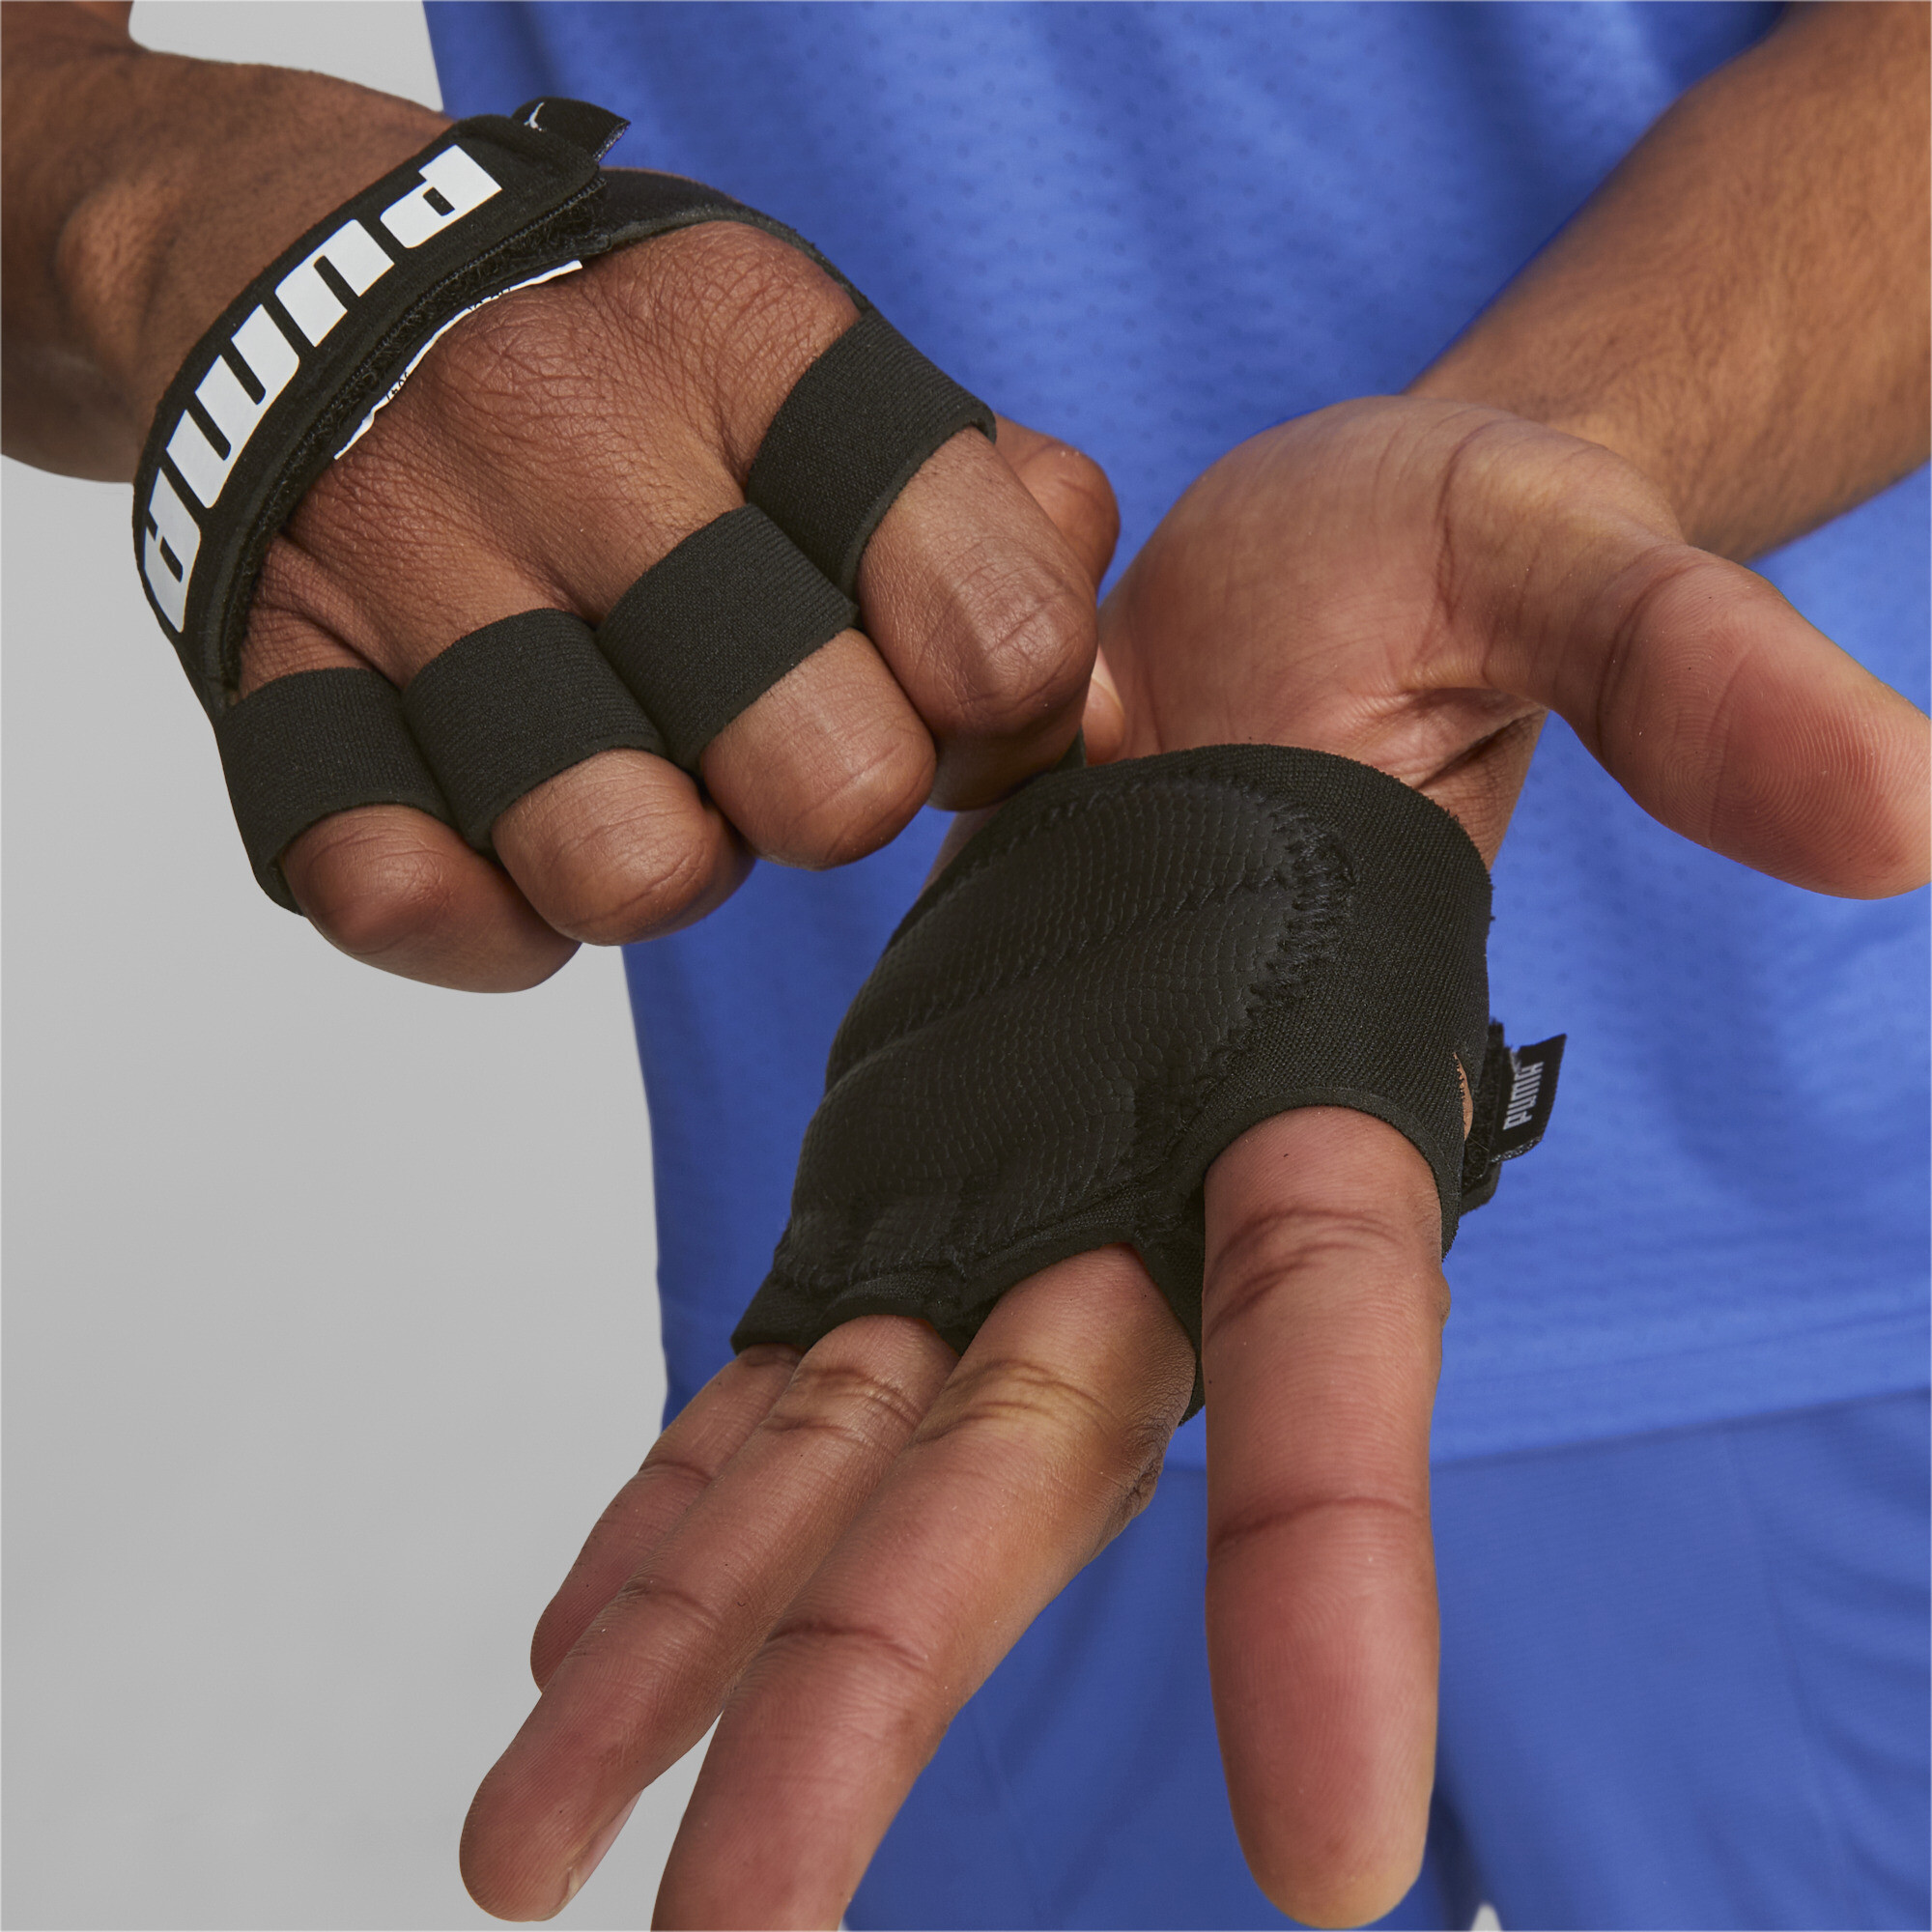 Men's PUMA Essential Training Grip Gloves In 10 - Black, Size Medium